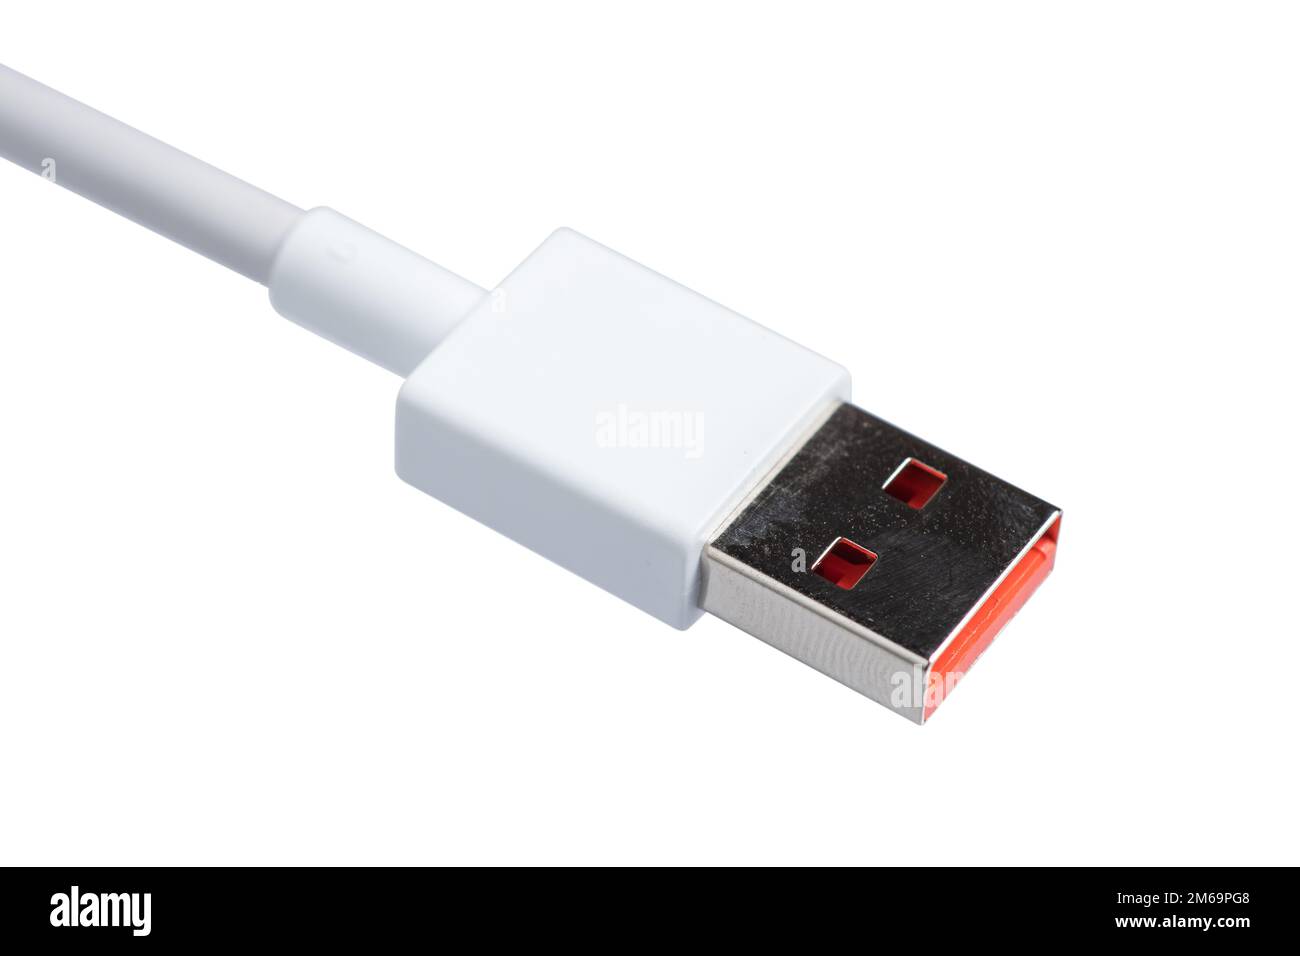 Cavo dati USB di colore bianco generico di alta qualità compatibile con tutti i telefoni cellulari. Progettato per collegare dispositivi micro USB, inclusi telefoni e tablet. Foto Stock